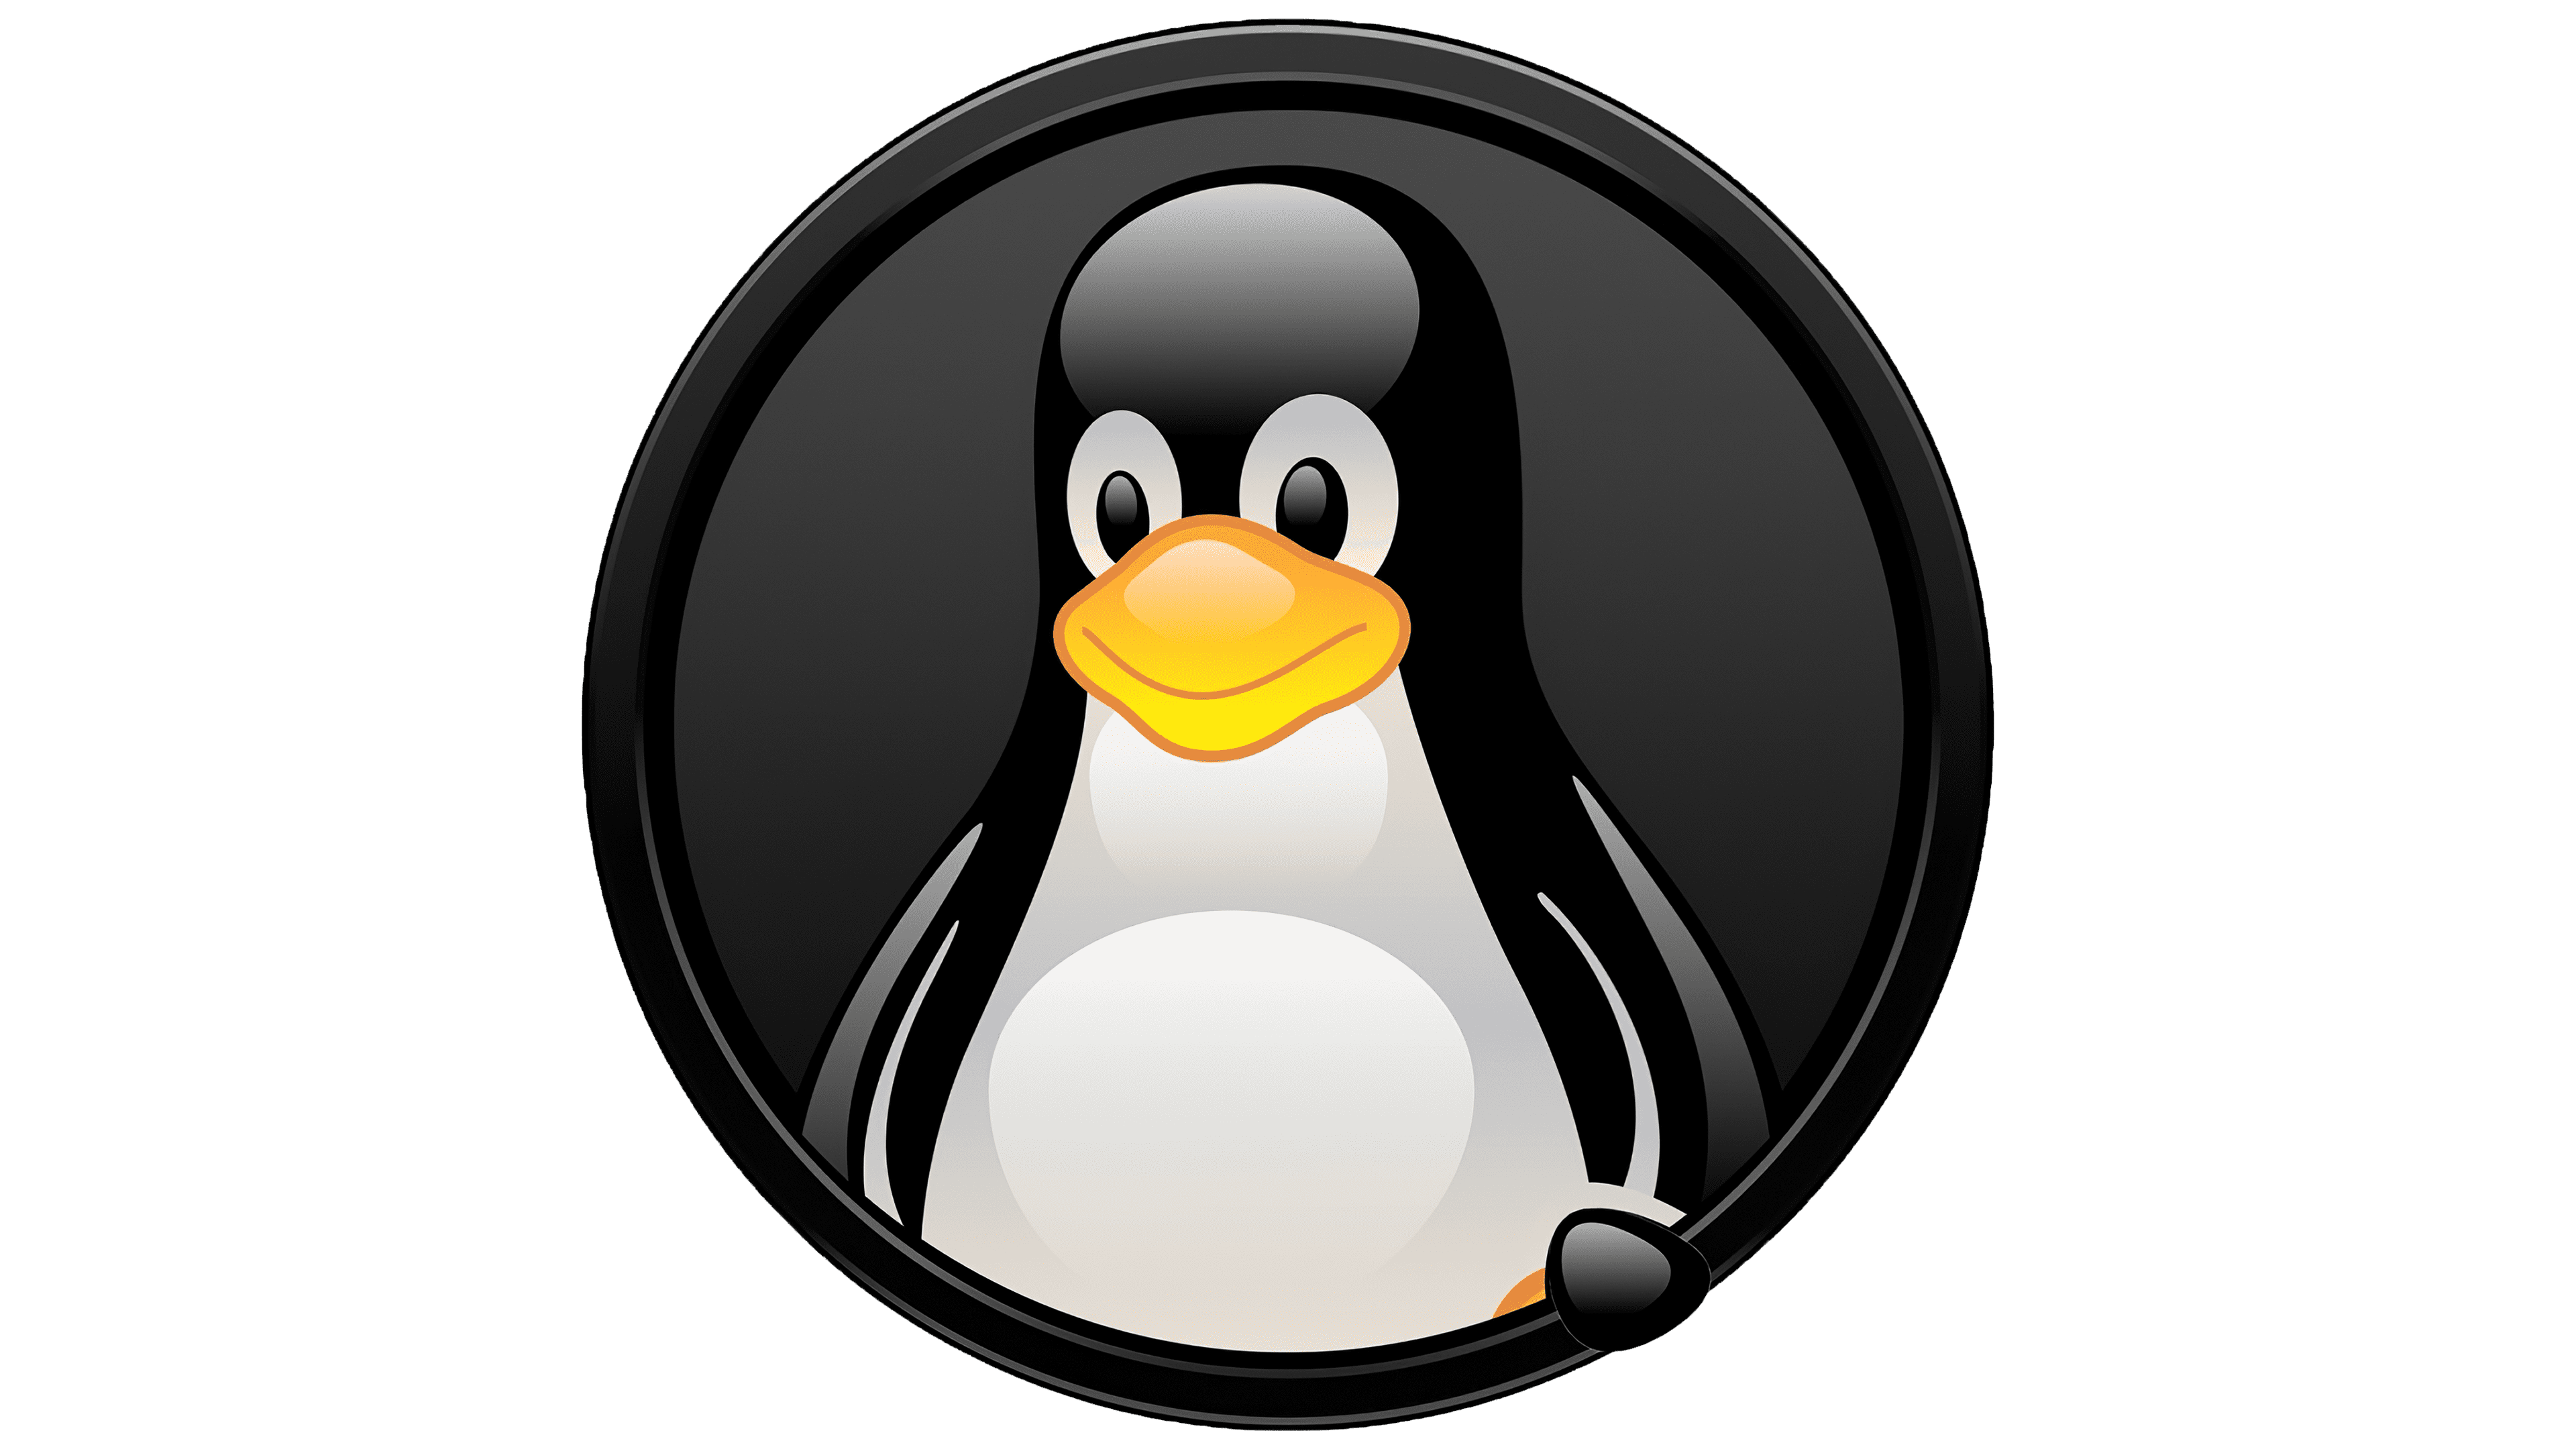 Ярлыки в linux